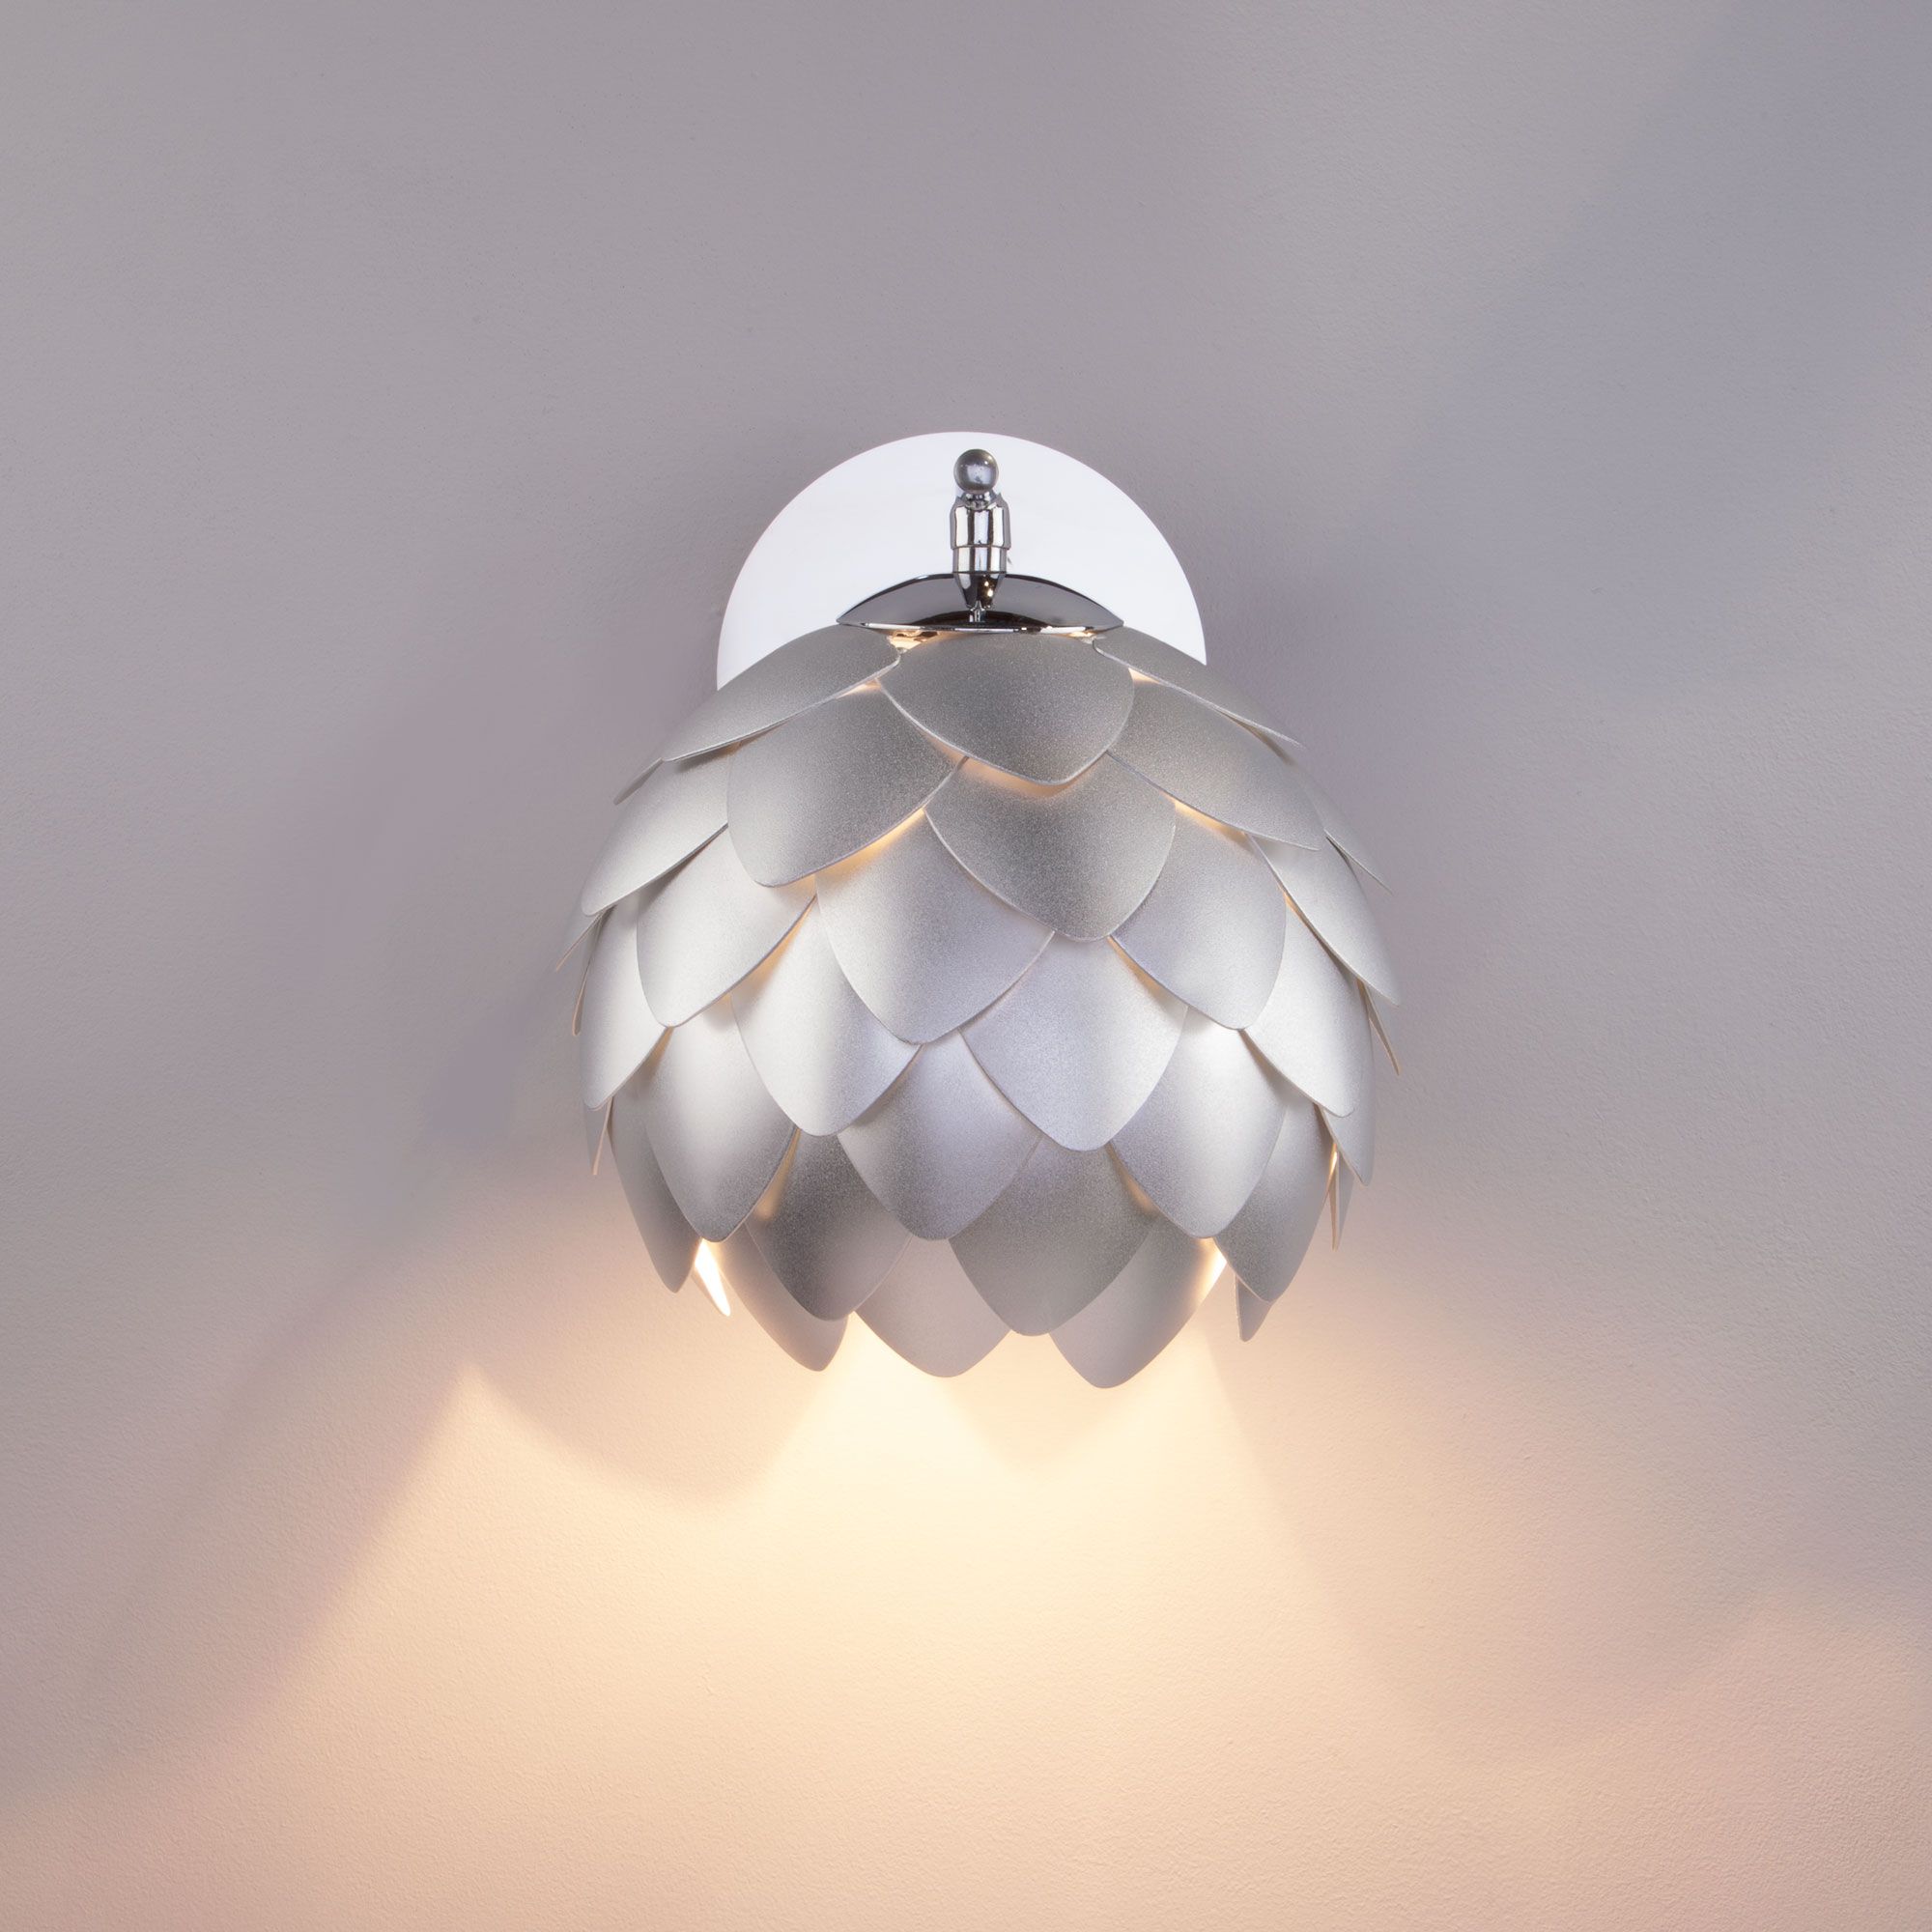 Настенный светильник с металлическим плафоном Bogate's Cedro 304 серебро / хром. Фото 4